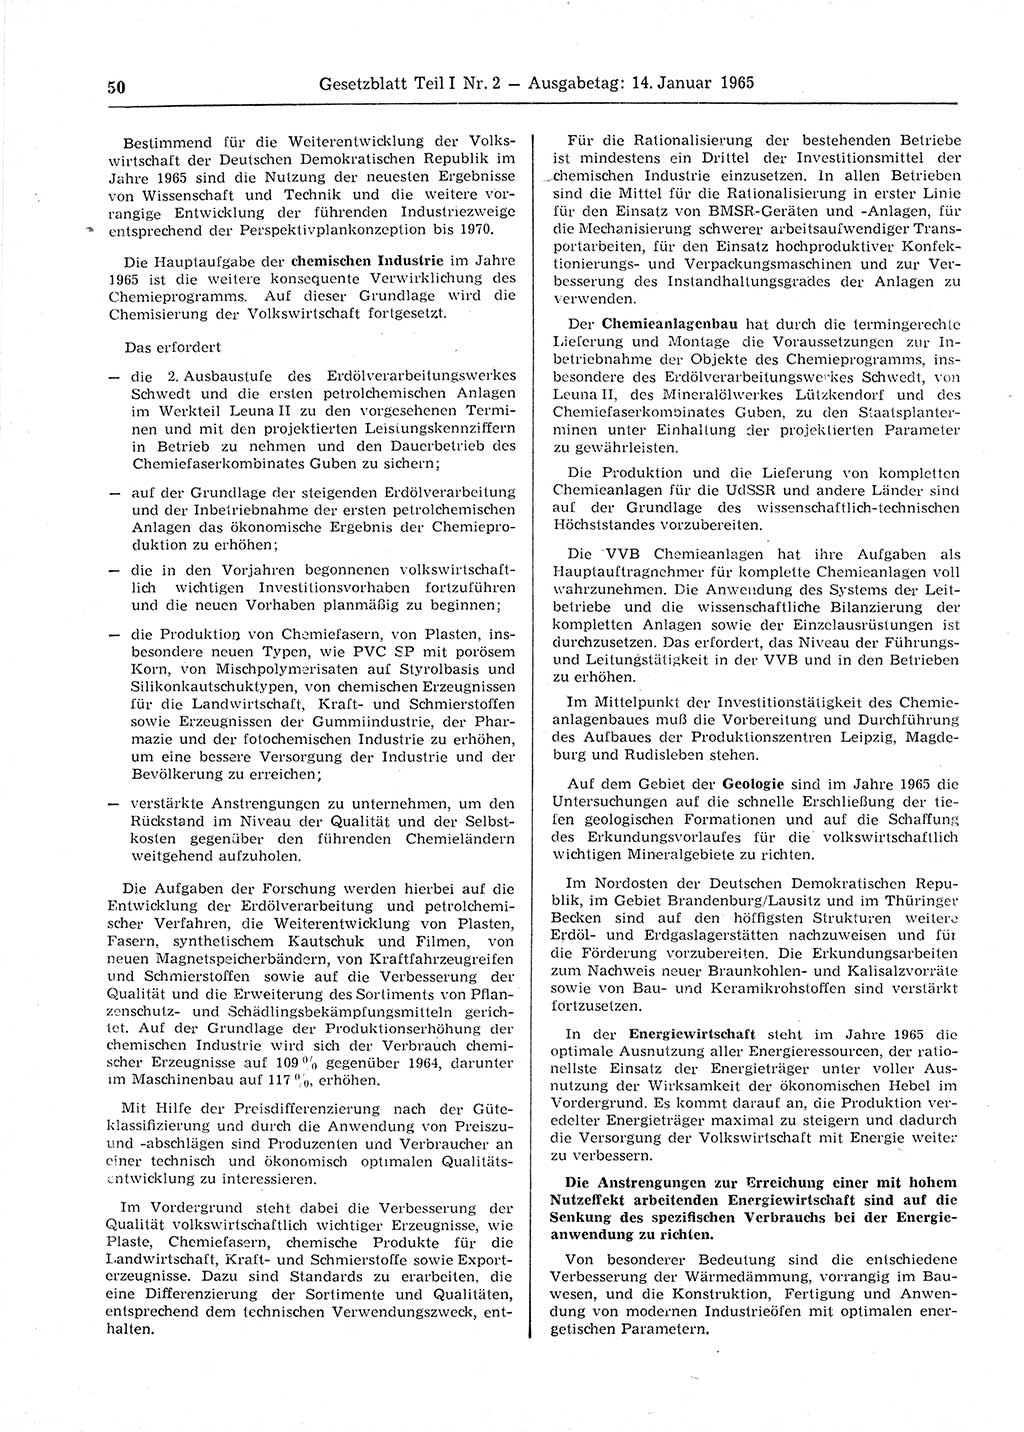 Gesetzblatt (GBl.) der Deutschen Demokratischen Republik (DDR) Teil Ⅰ 1965, Seite 50 (GBl. DDR Ⅰ 1965, S. 50)